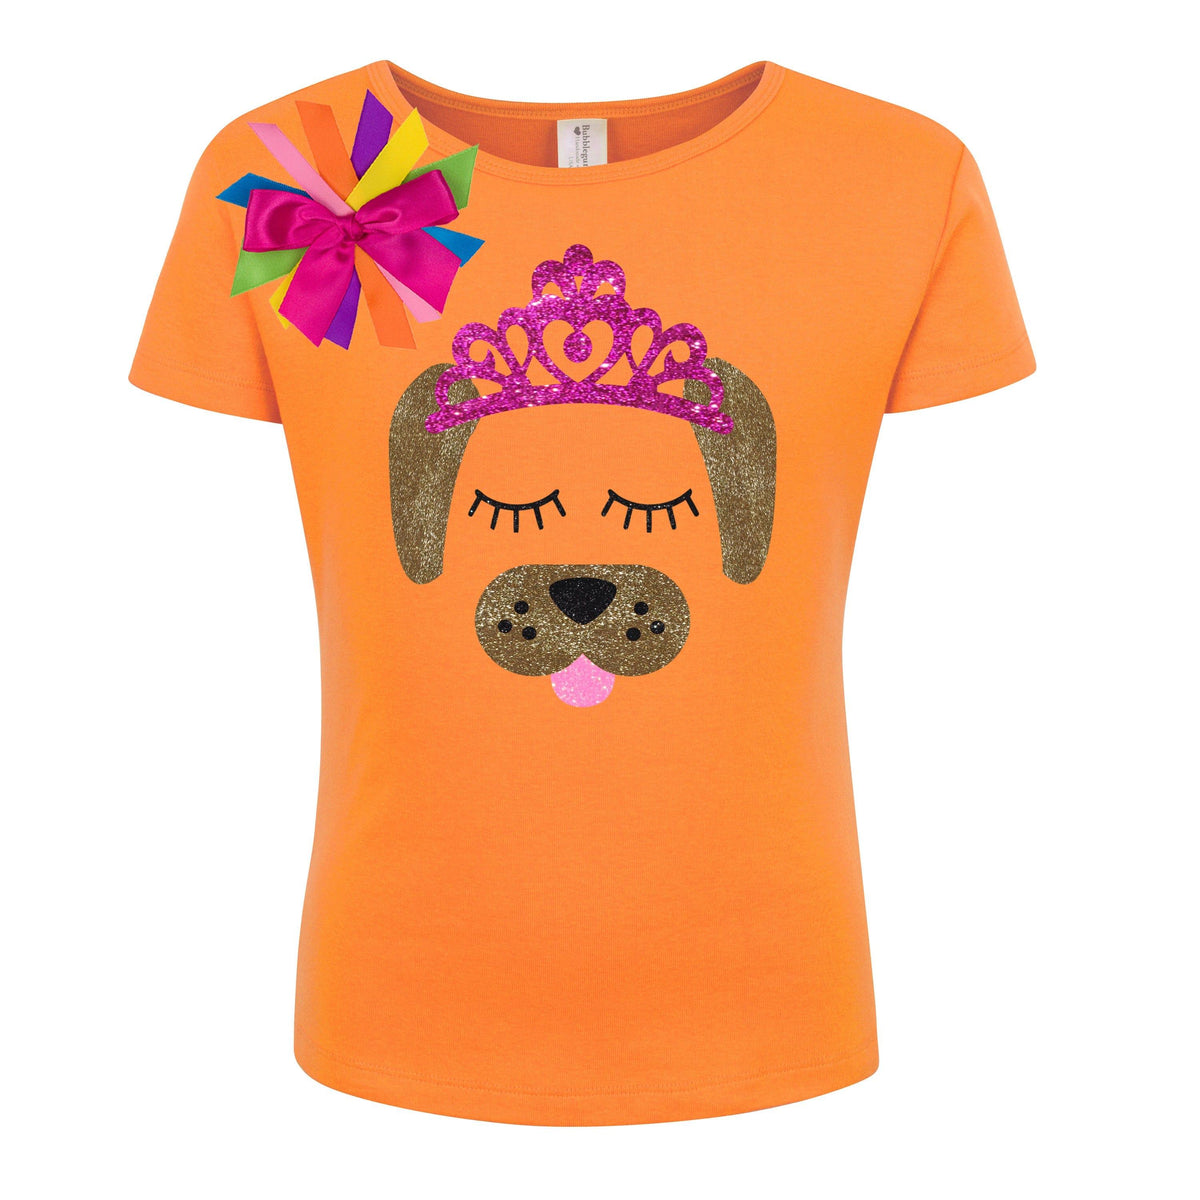 Puppy Dog Shirt - Pink Tiara - Shirt - Bubblegum Divas Store